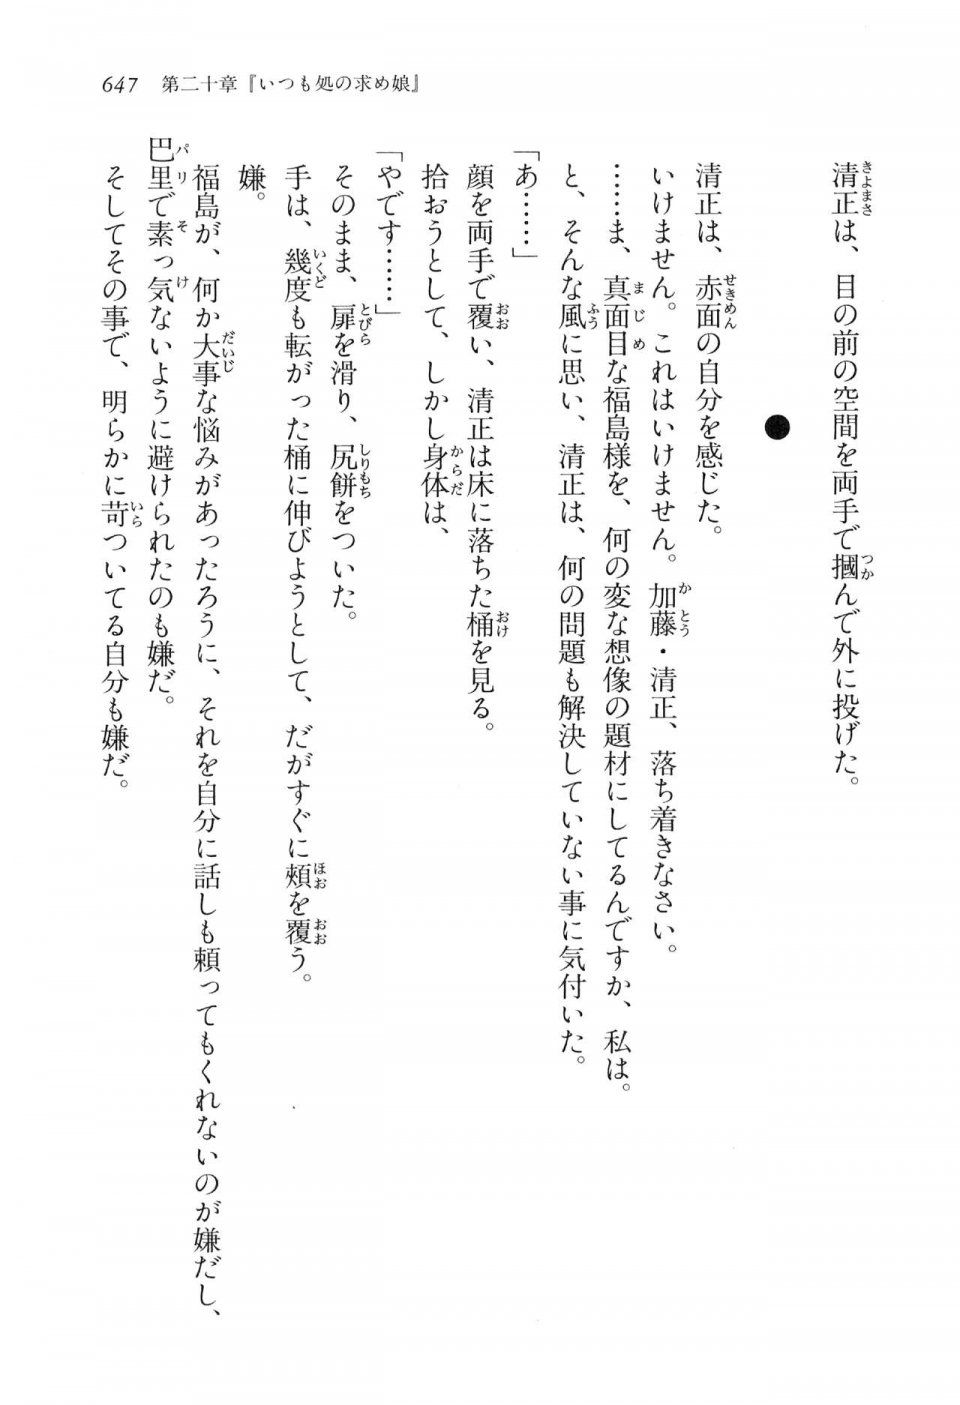 Kyoukai Senjou no Horizon LN Vol 16(7A) - Photo #647